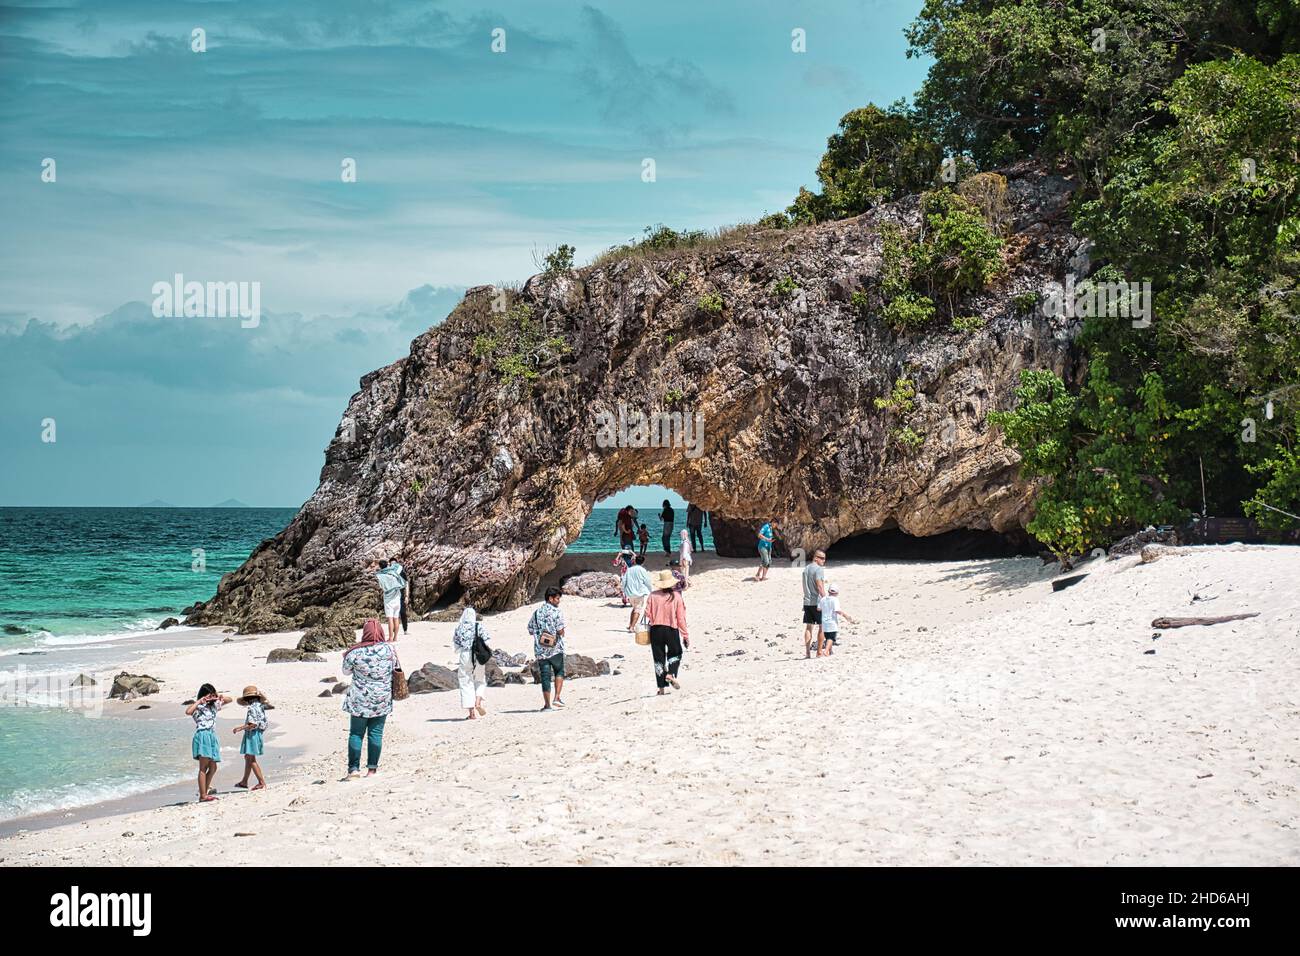 Parc national de Tarutao, Thaïlande le 10 décembre 2021 comprend 51 îles dans le détroit de Malacca au large de la province de Satun, dans le sud de la Thaïlande Banque D'Images